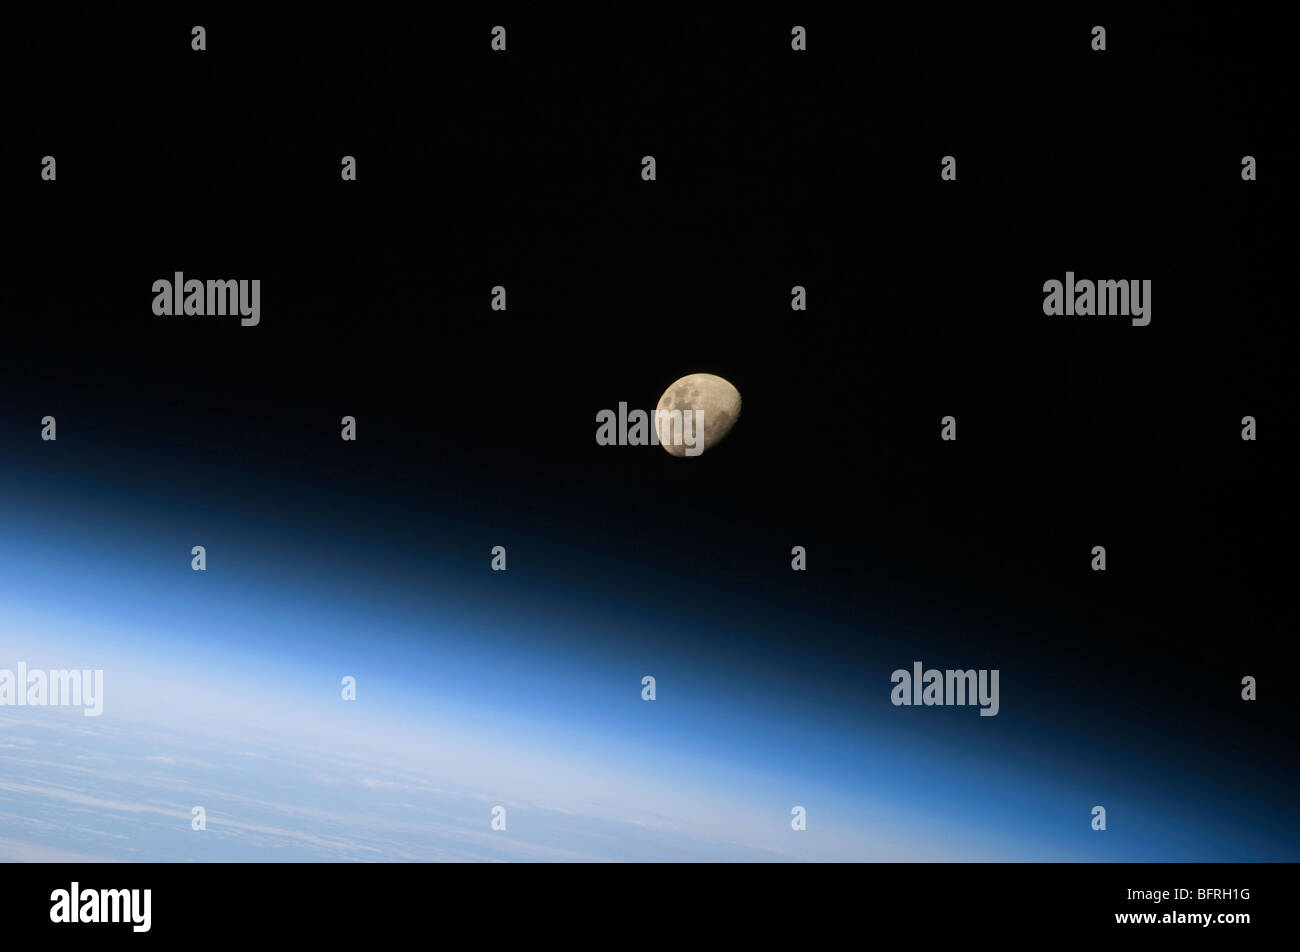 30 août 2009 - Une Lune gibbeuse visibles au-dessus de l'atmosphère de la Terre. Banque D'Images